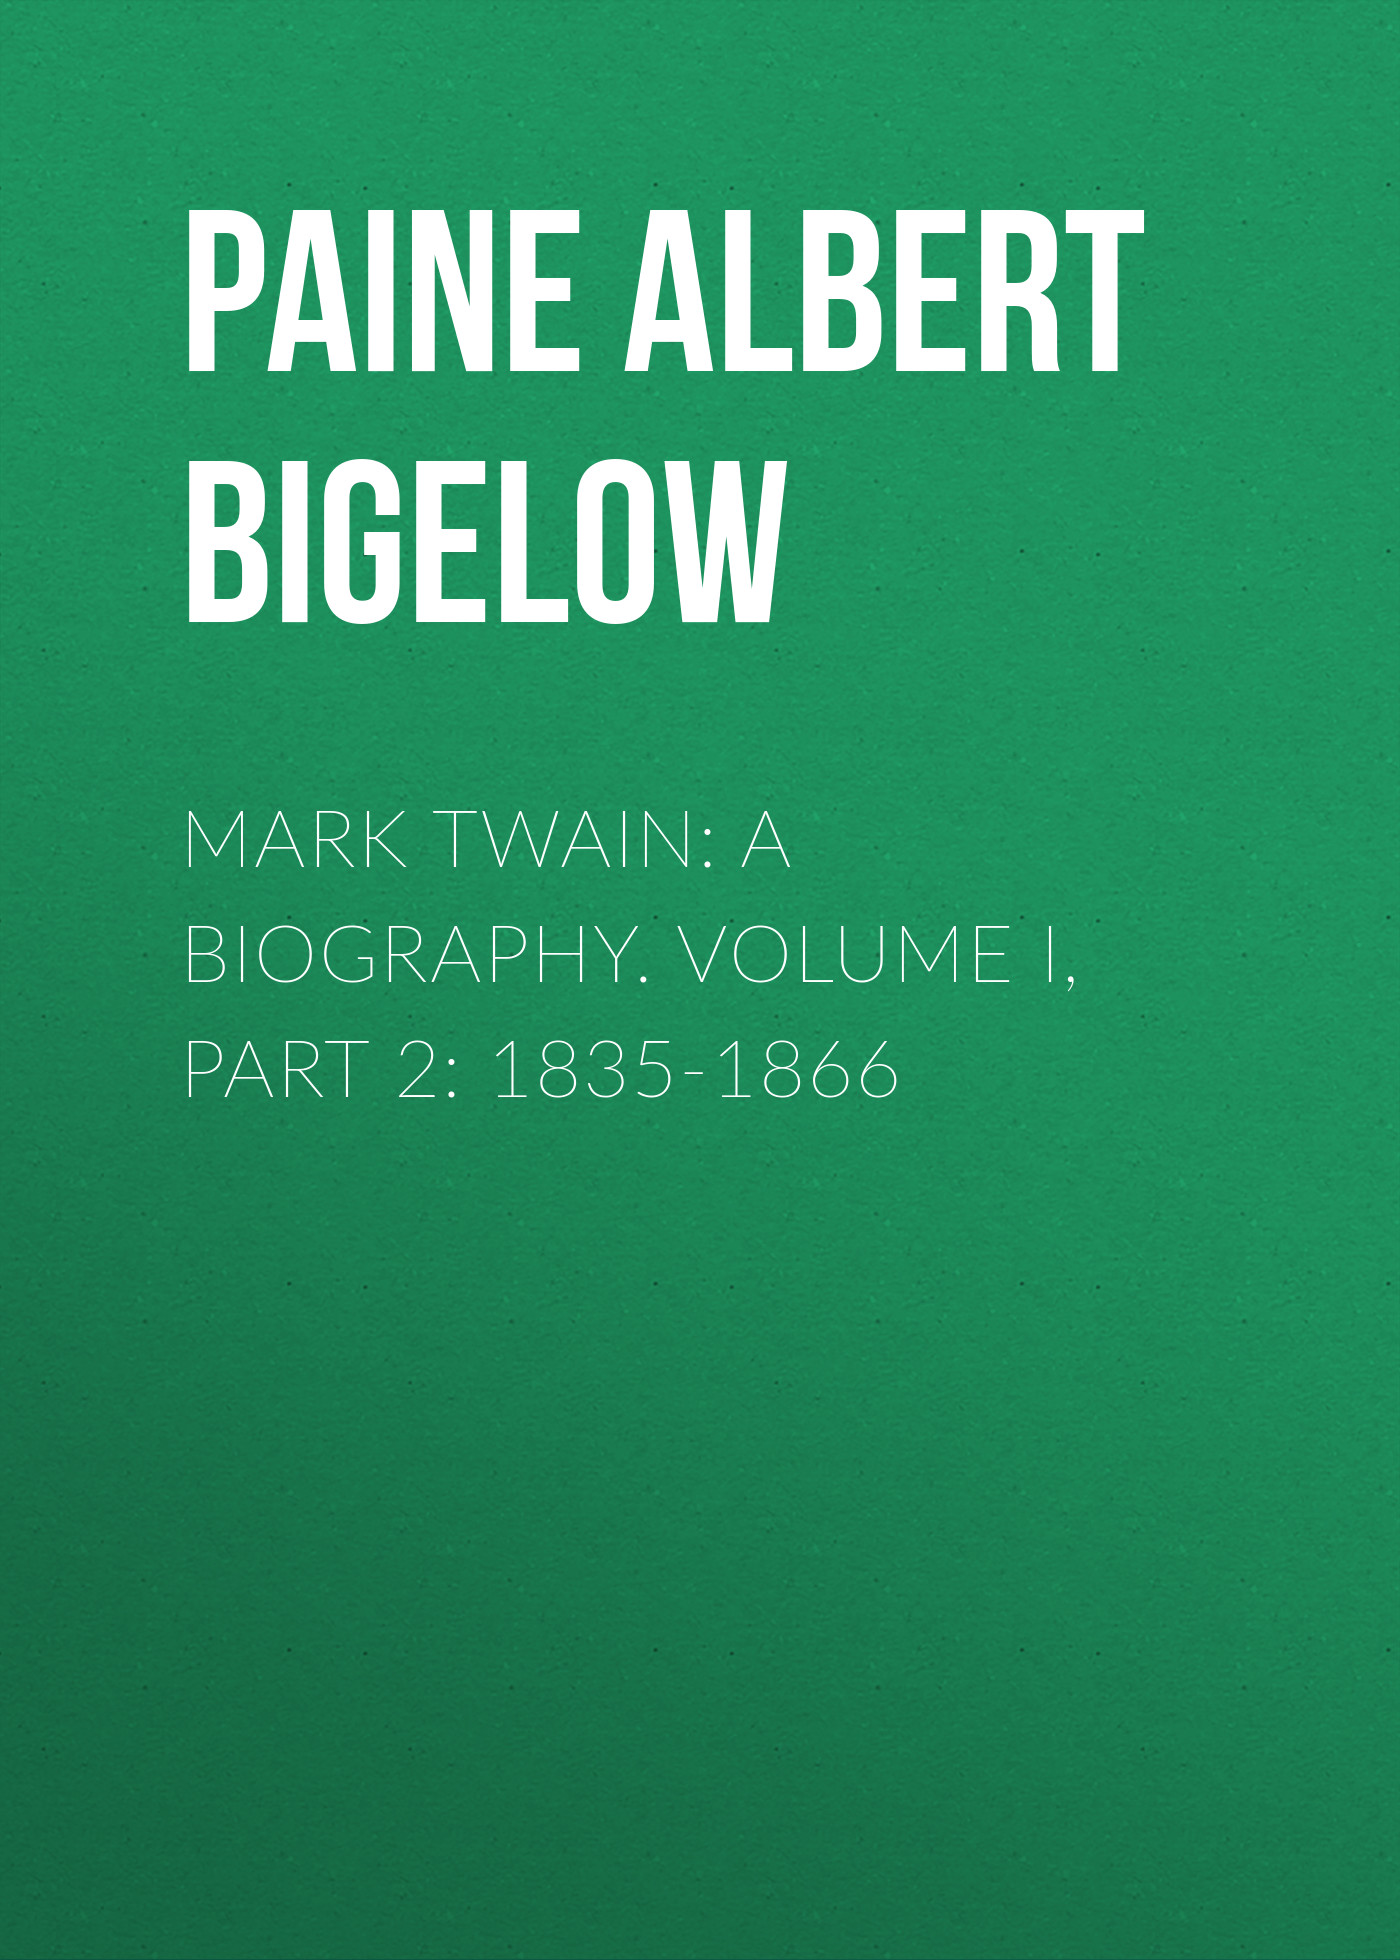 Книга Mark Twain: A Biography. Volume I, Part 2: 1835-1866 из серии , созданная Albert Paine, может относится к жанру Биографии и Мемуары, Зарубежная старинная литература. Стоимость электронной книги Mark Twain: A Biography. Volume I, Part 2: 1835-1866 с идентификатором 34840446 составляет 0 руб.